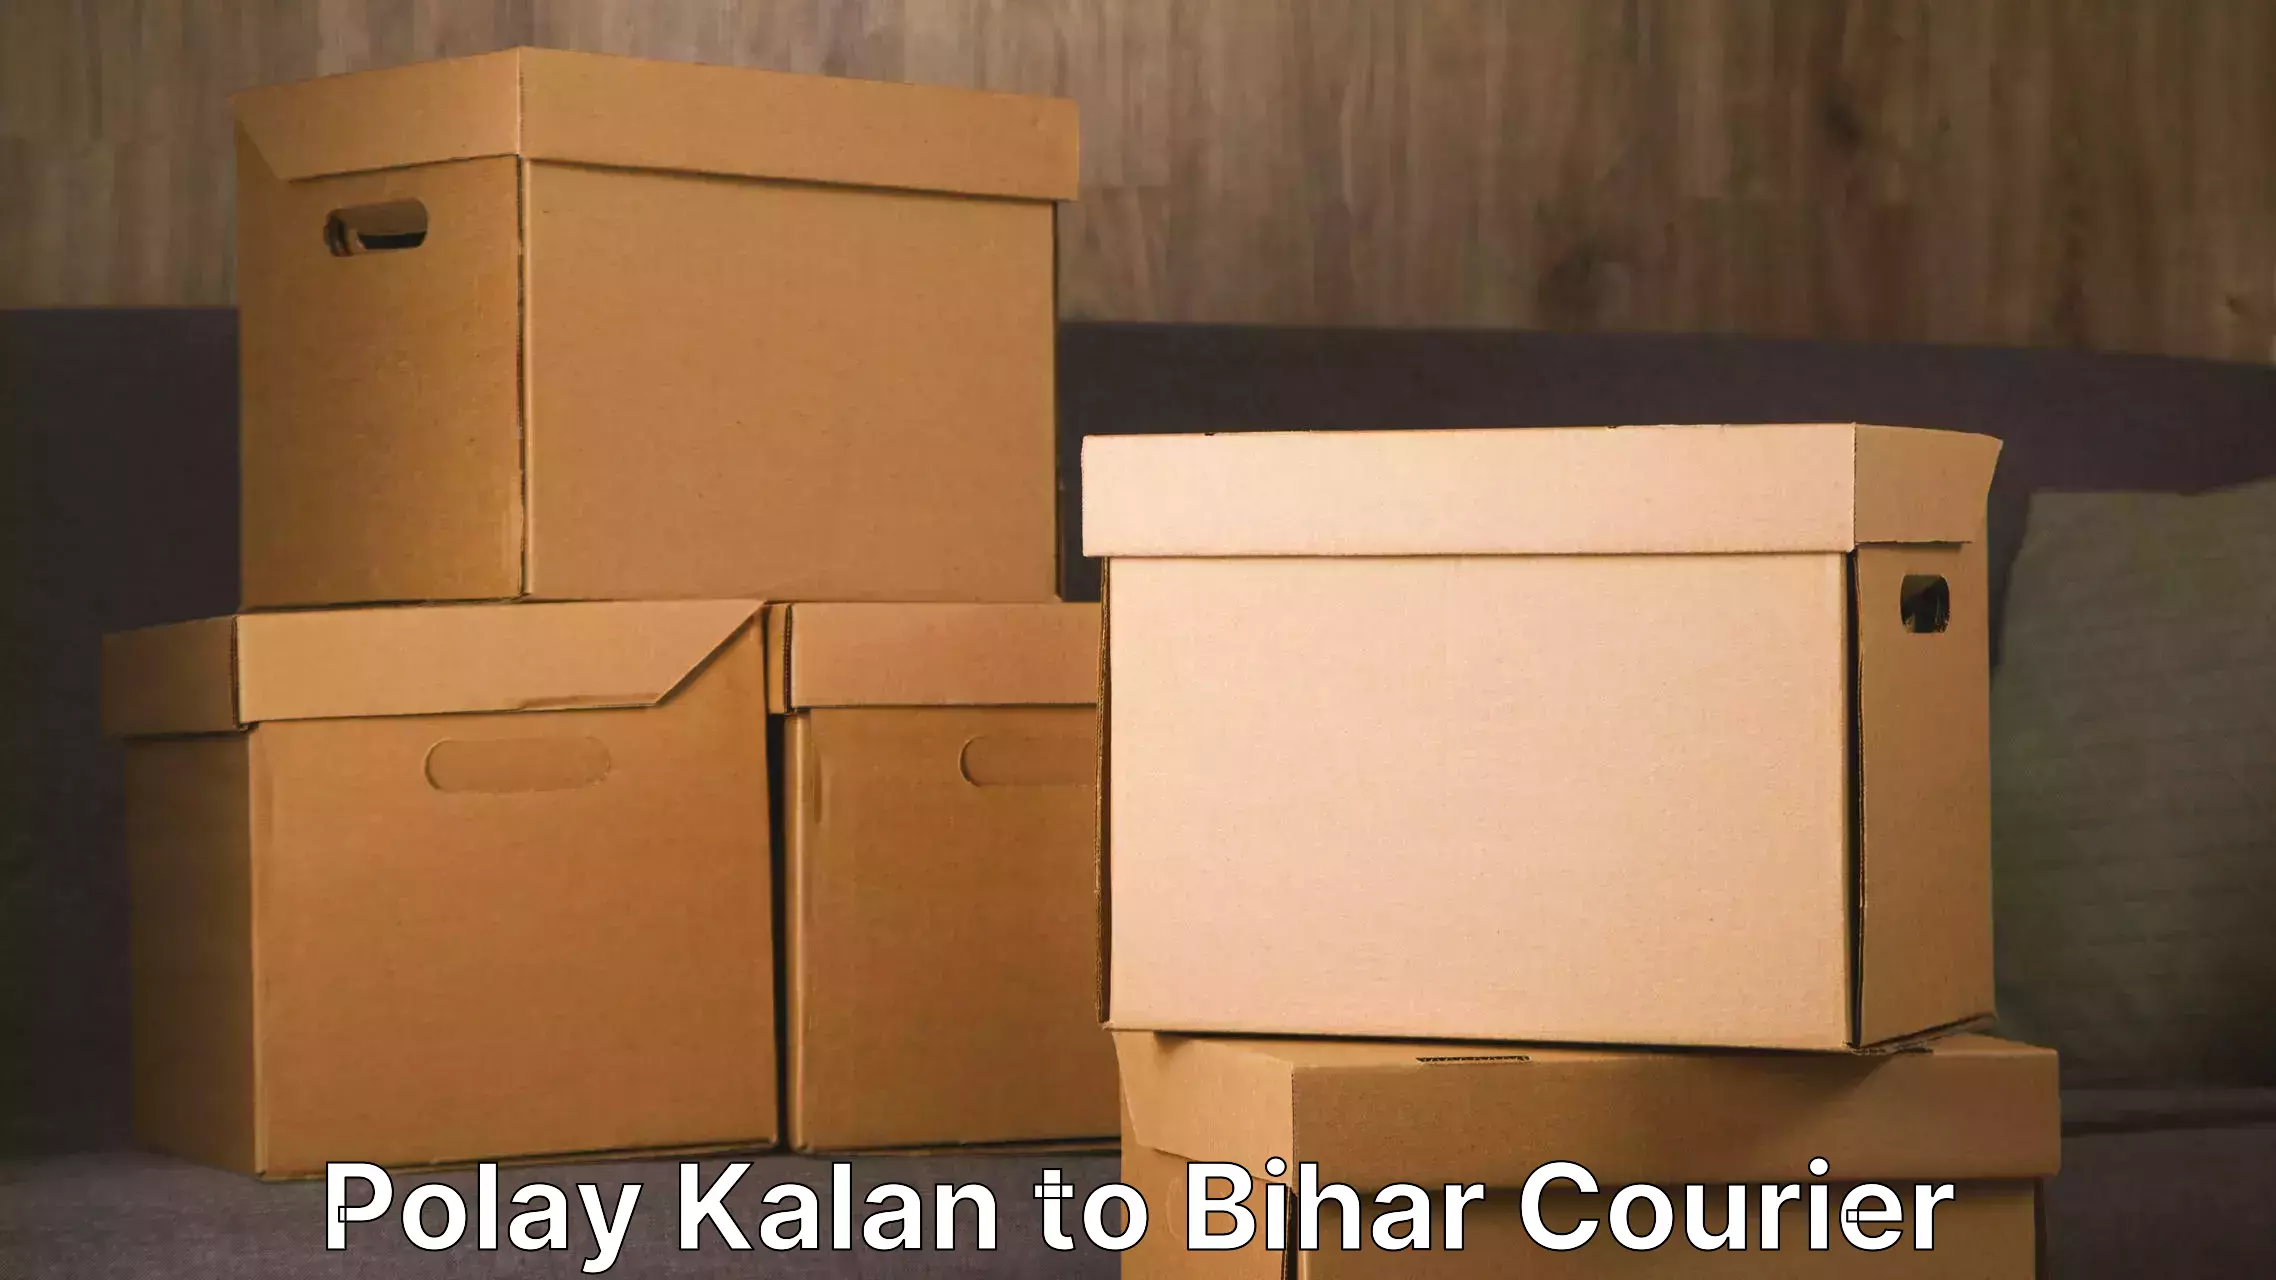 Door to door moving Polay Kalan to Bihar